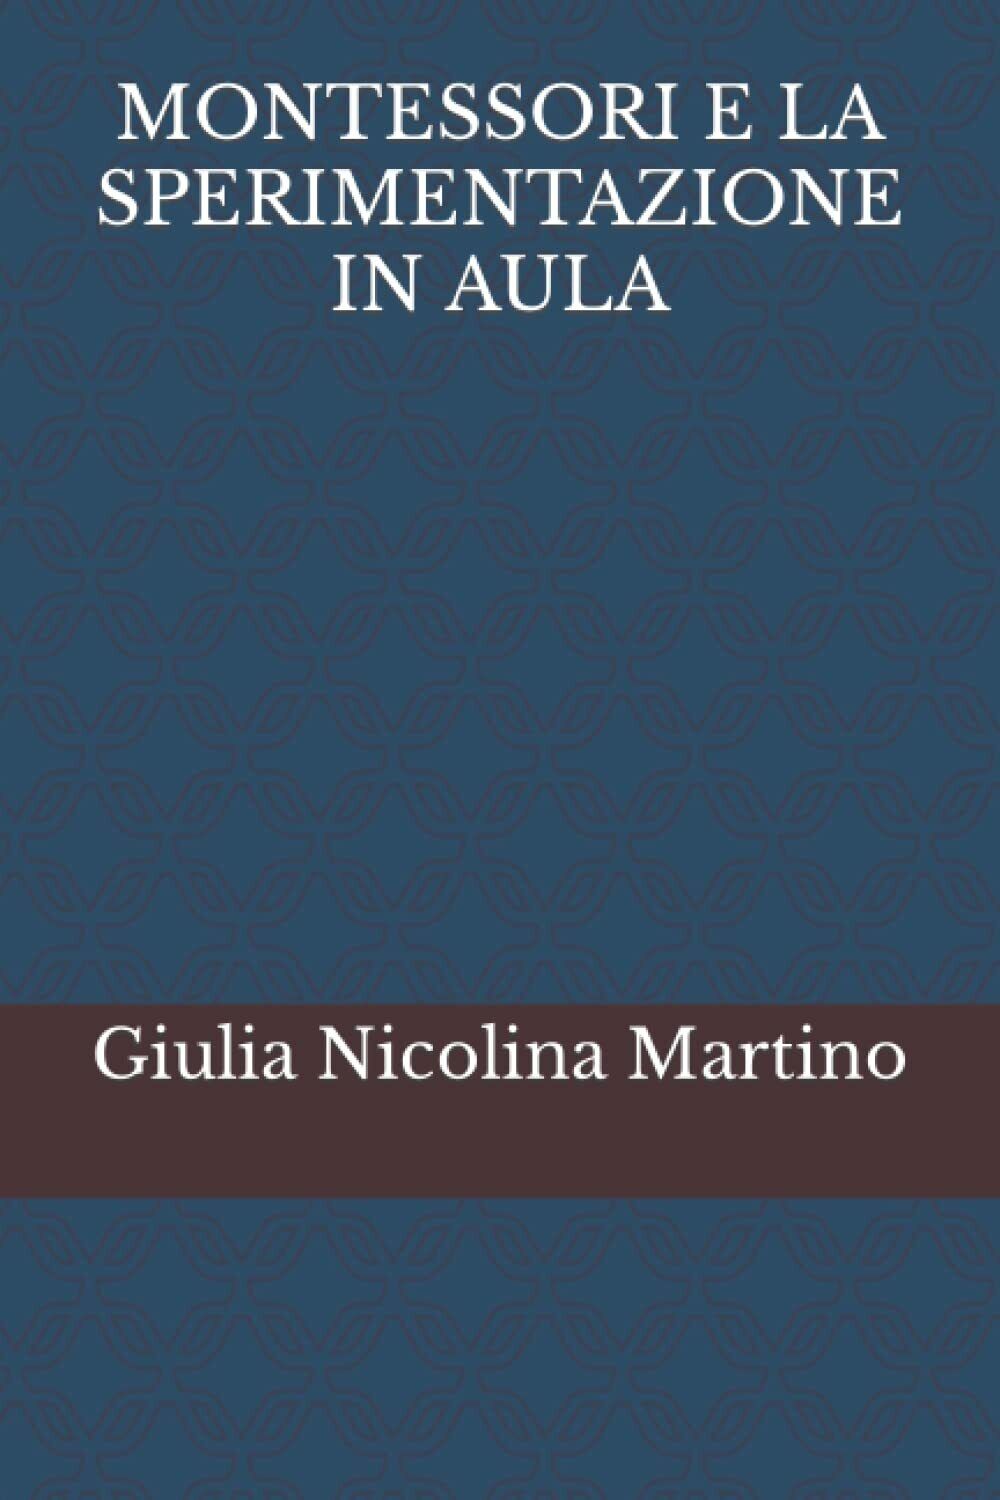 MONTESSORI E LA SPERIMENTAZIONE IN AULA di Giulia Nicolina Martino,  2022,  Indi